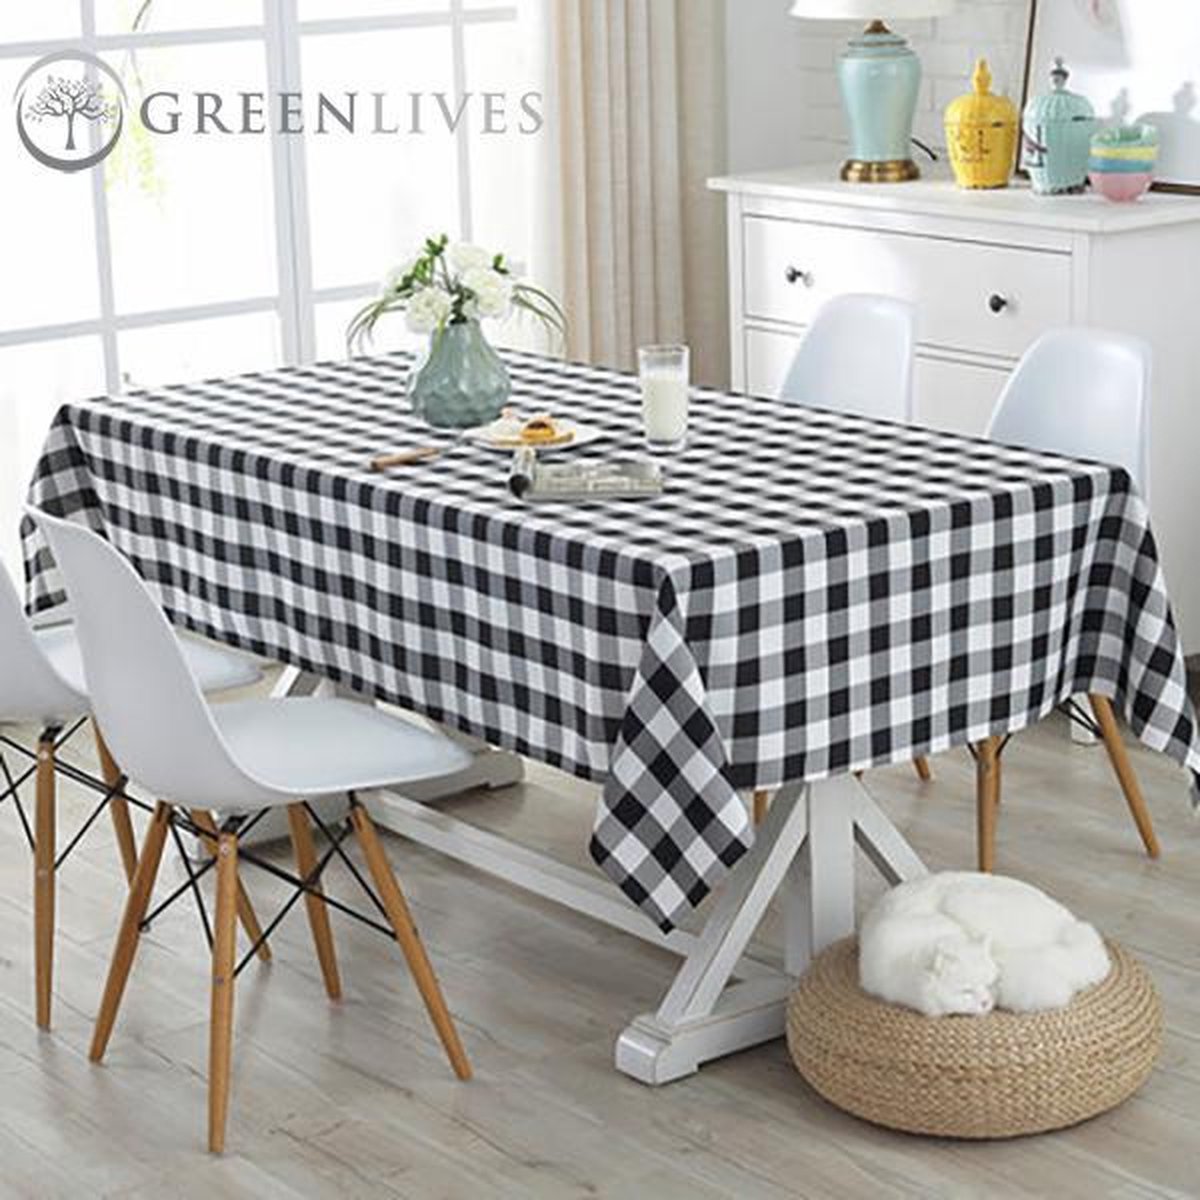 GreenLives - Luxe Tafelkleed Ruitje - 180 x 120 cm - Zwart - 100% Polyester - Boerenbont tafelkleed - Water afstotend - Voor binnen en buiten!